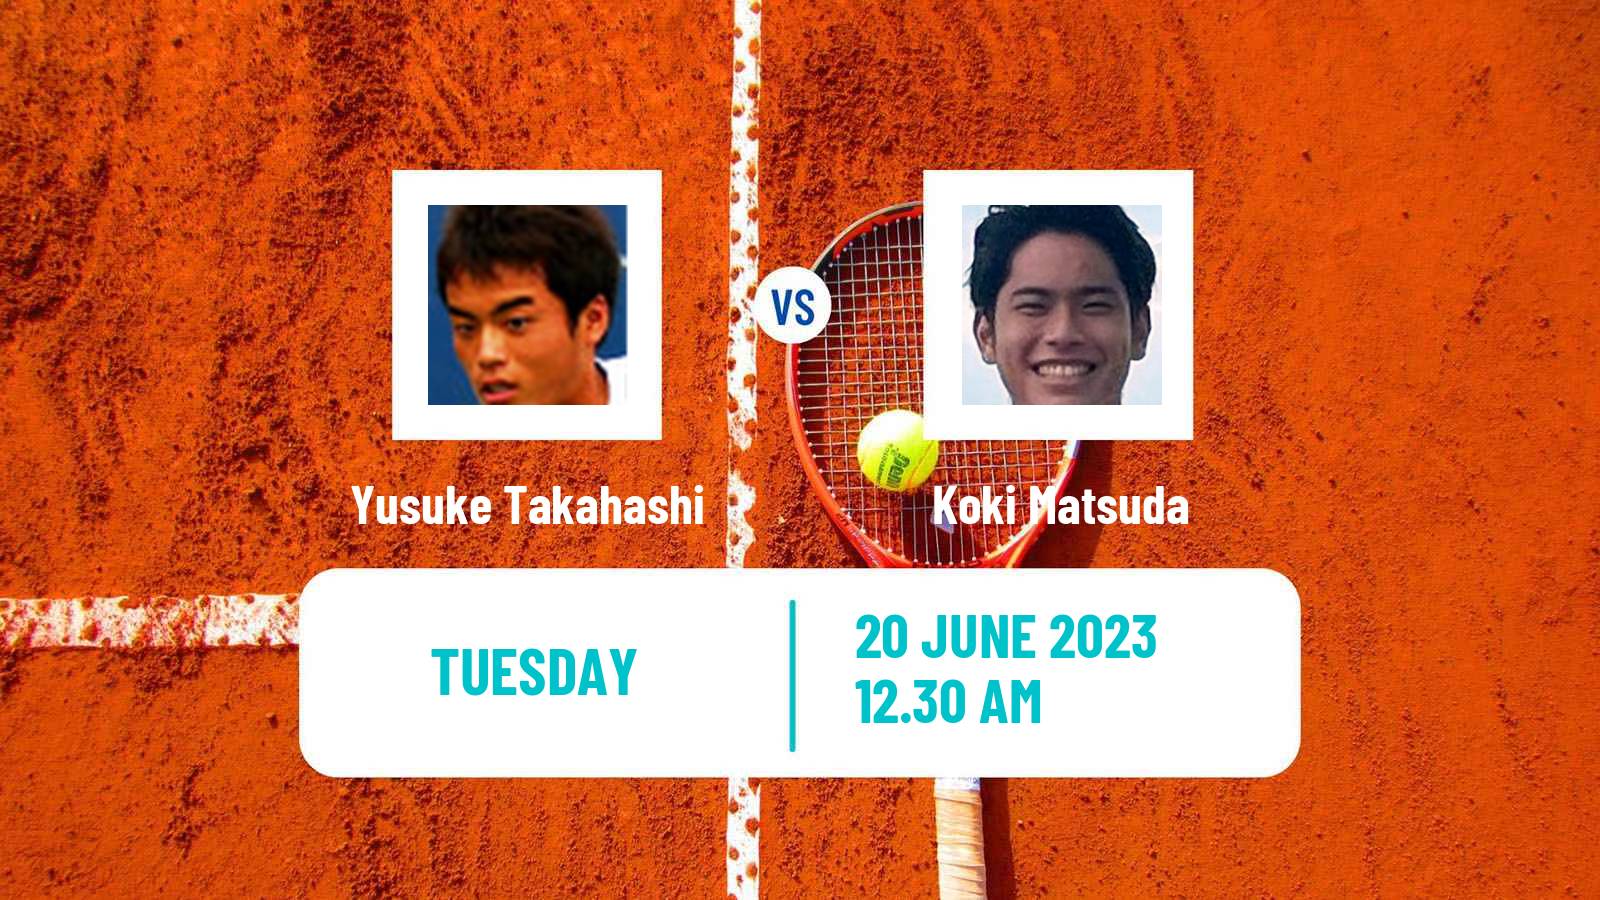 Tennis ITF M15 Jakarta 4 Men Yusuke Takahashi - Koki Matsuda